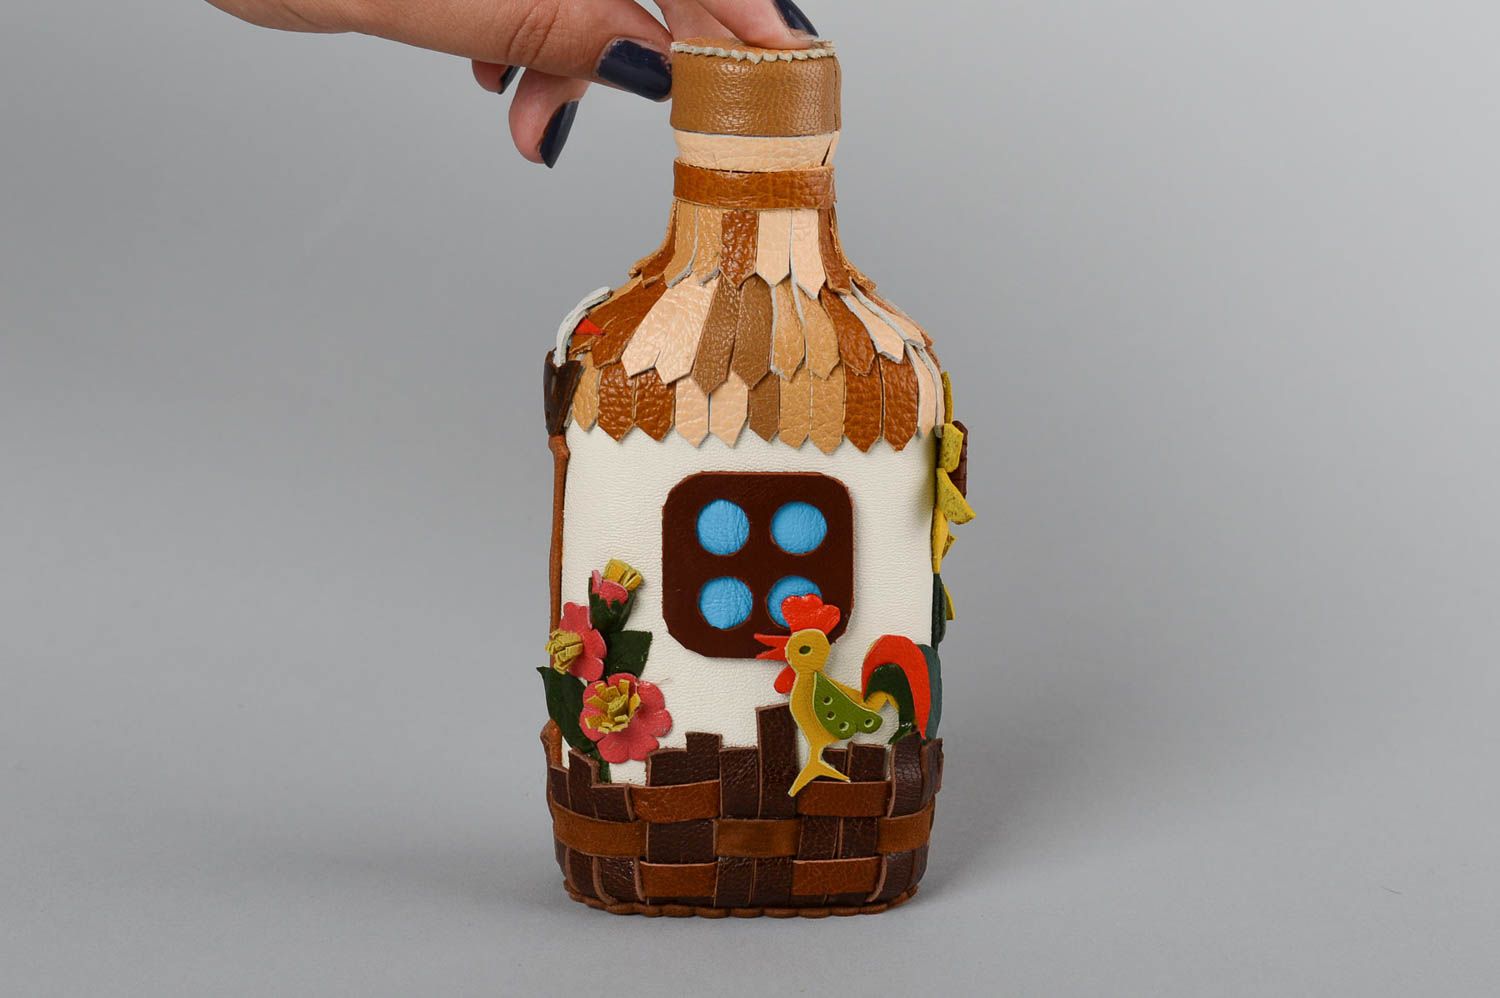 Cómo decorar botellas de cristal a mano –canalHOGAR